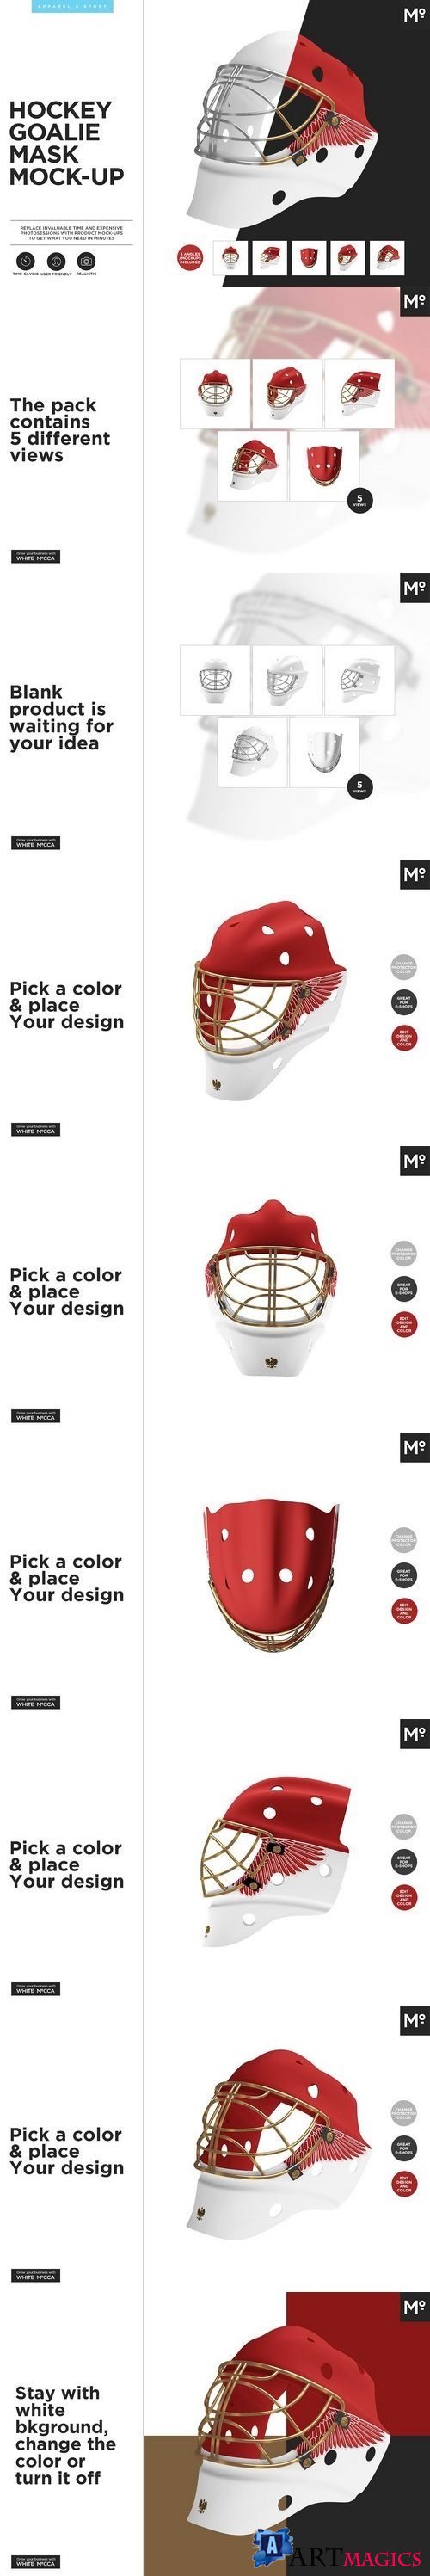 Hockey Goalie Mask Mock-up - 1900178